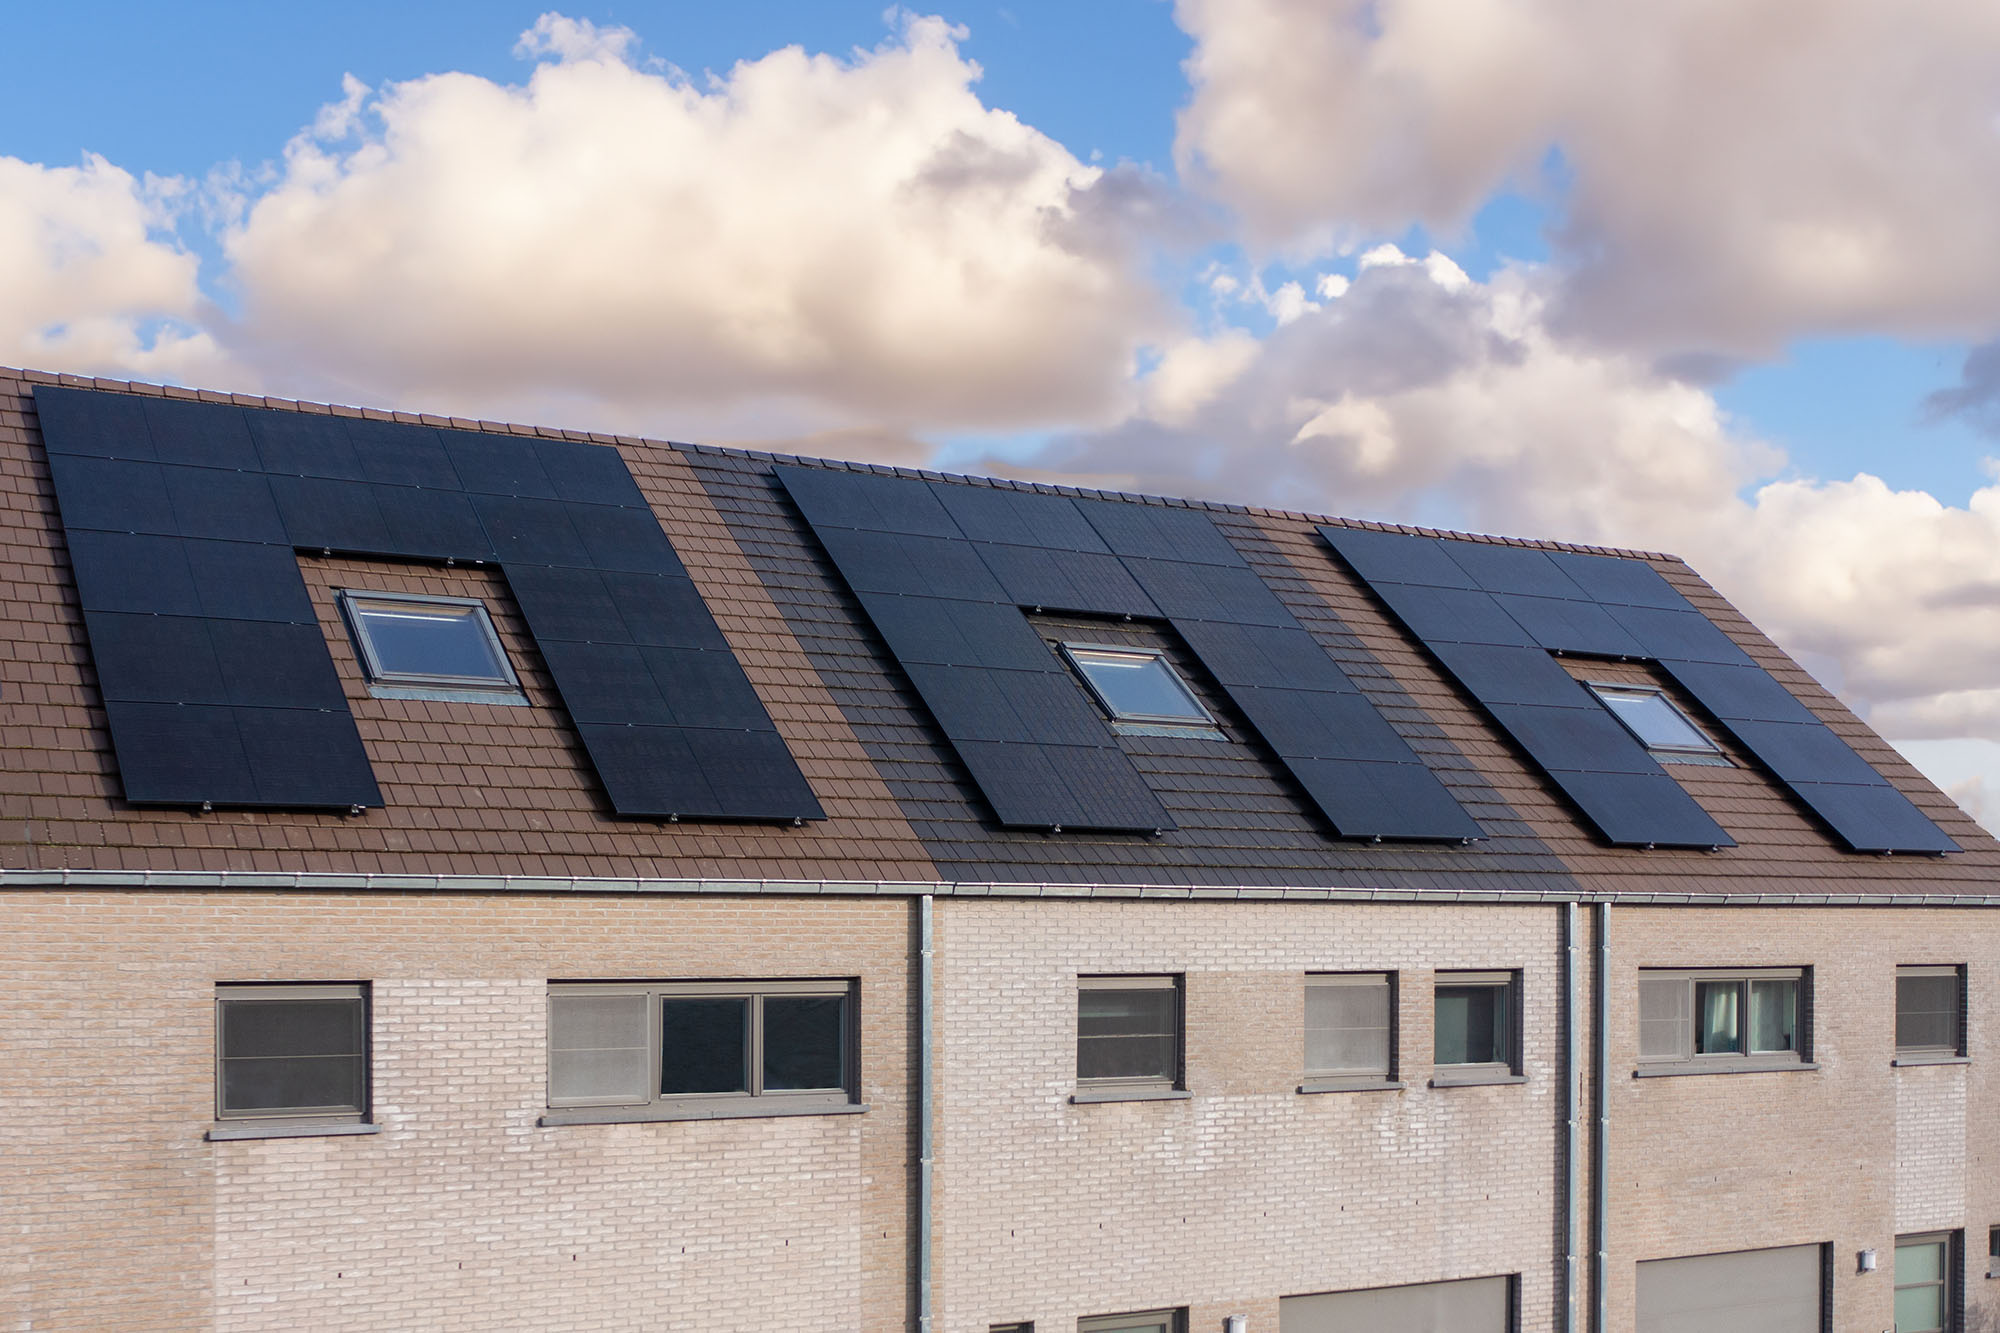 Drie rijwoningen waarvan de daken bekleed zijn met zonnepanelen geplaatst door Solar Engineering